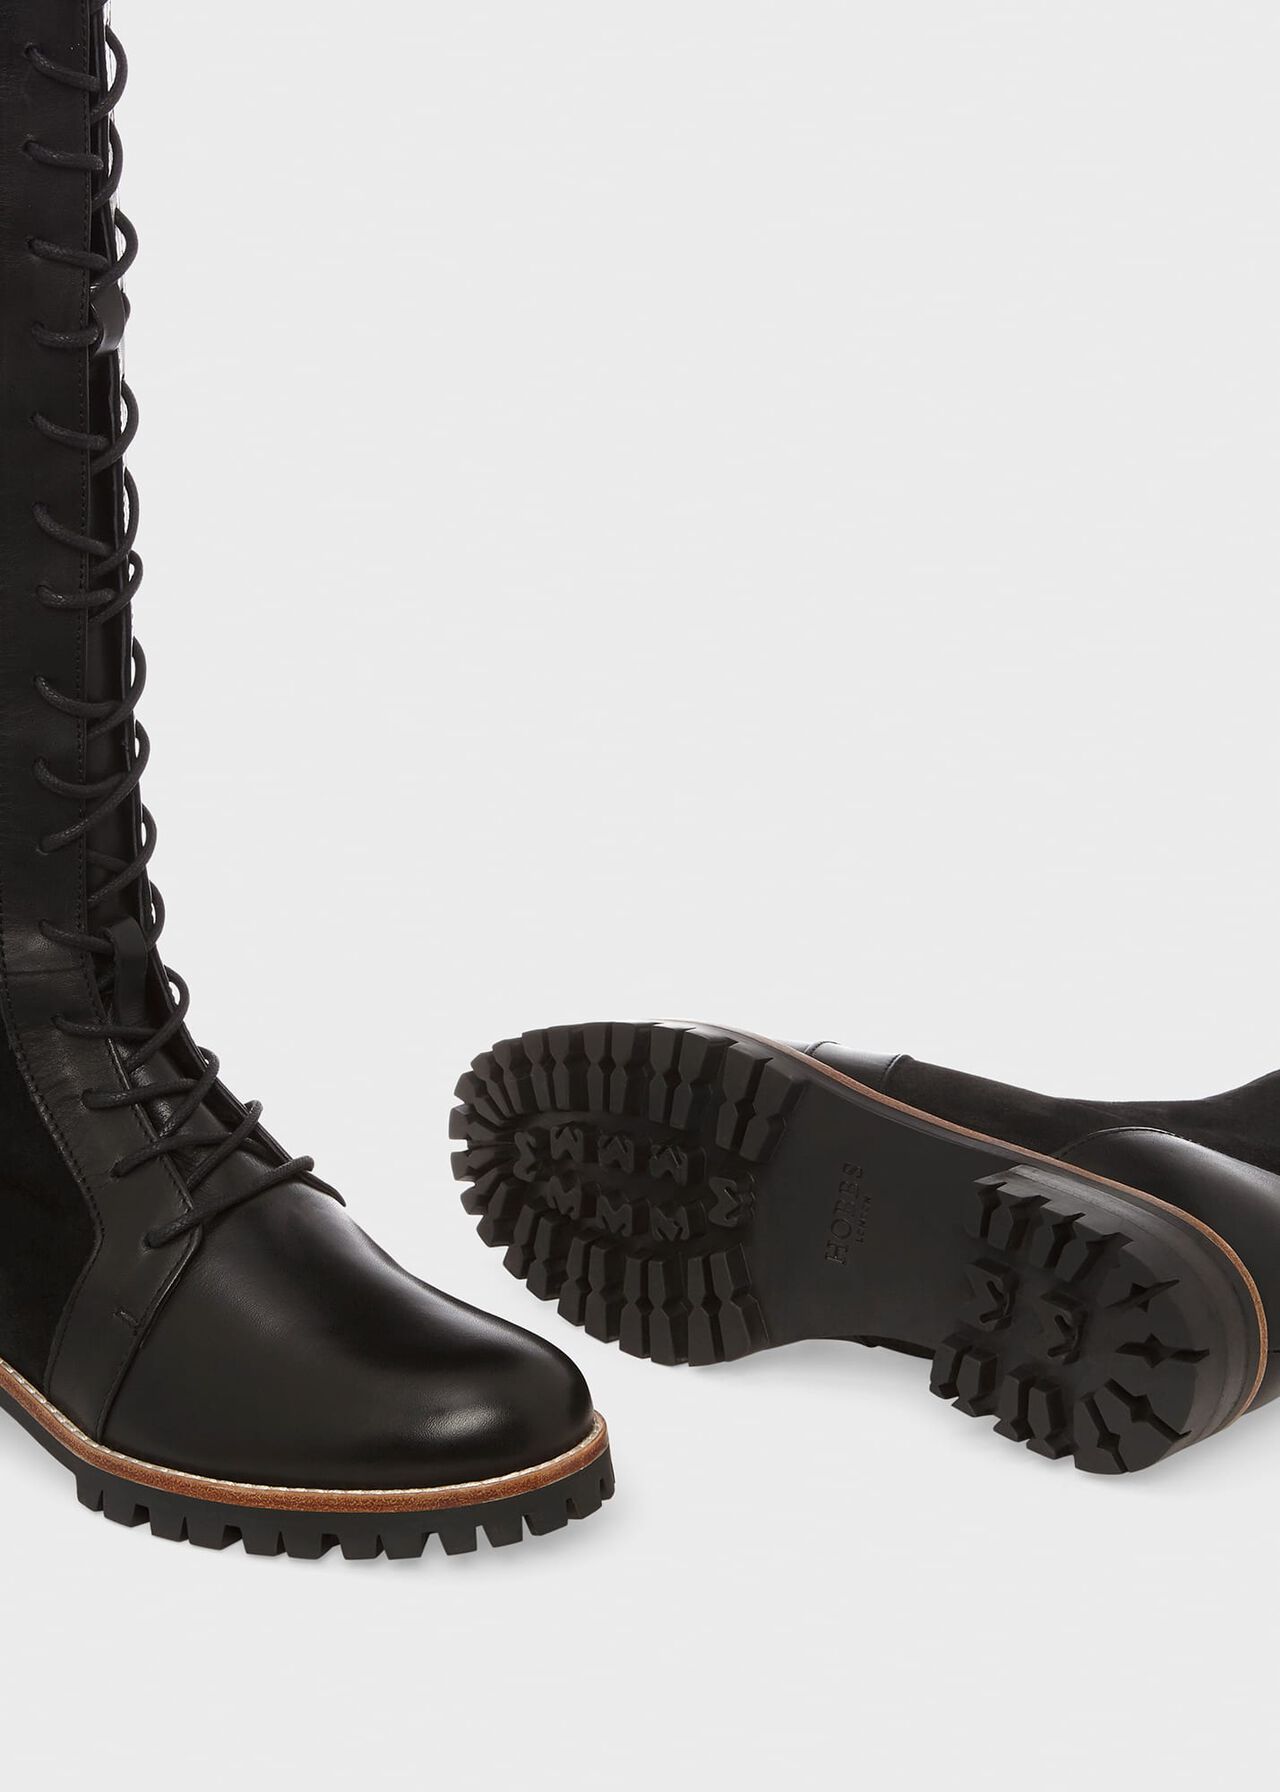 Devina Knee Boots, Black, hi-res